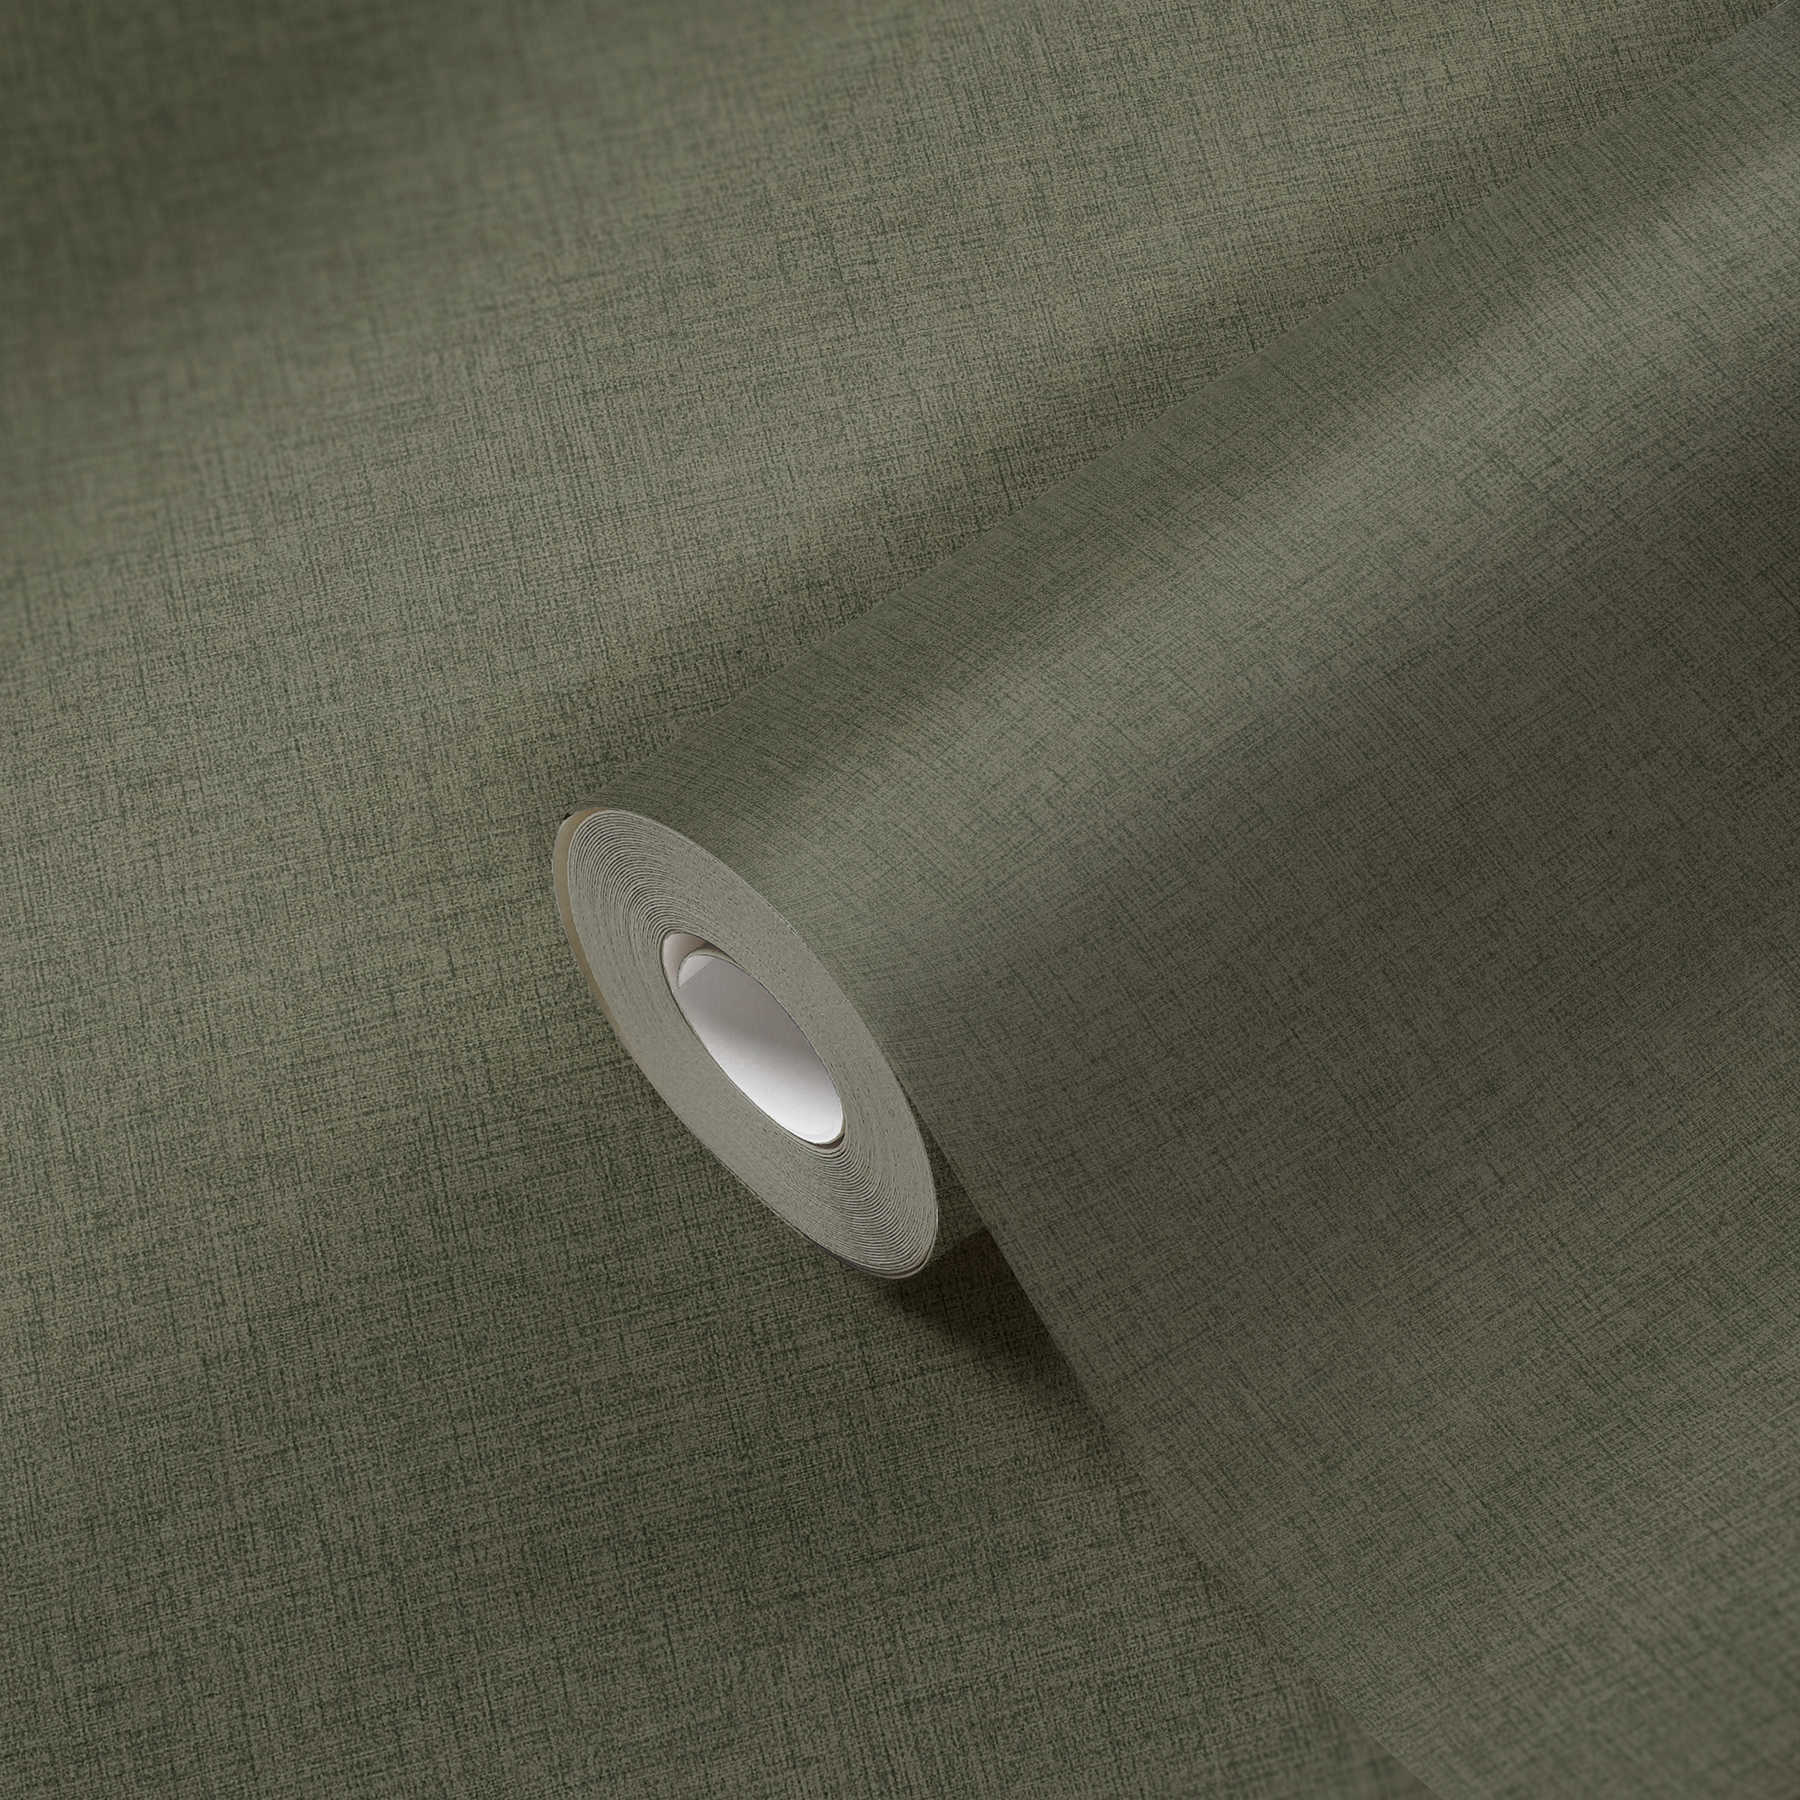             Vliesbehang effen met textiel look - groen
        